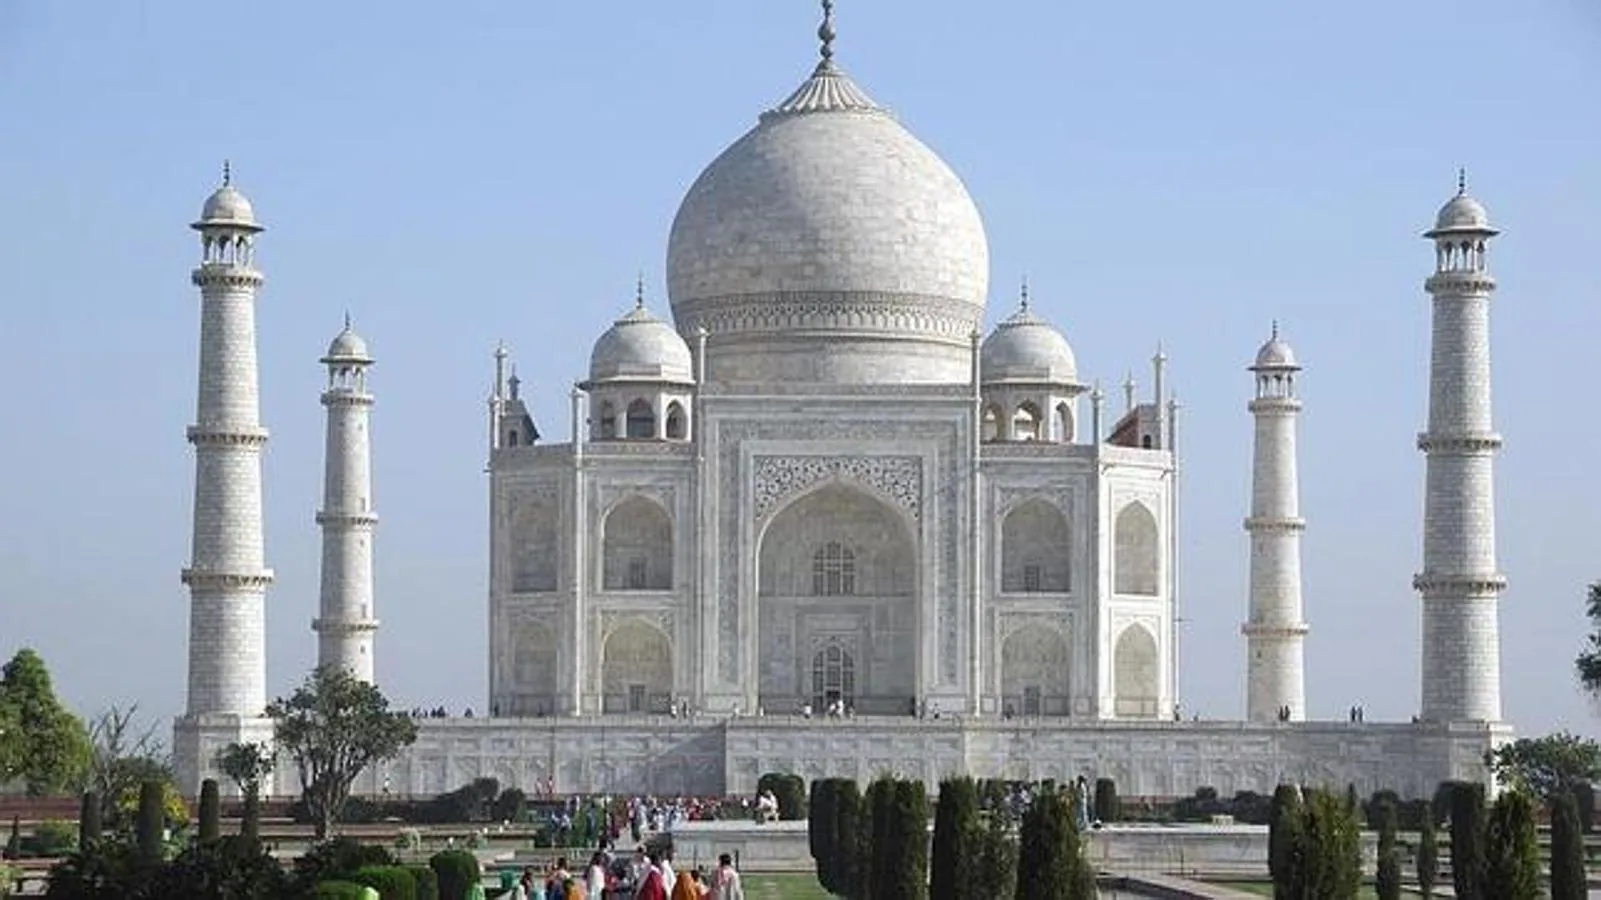 El Taj Mahal. Uno de los monumentos más famosos y visitados de toda India fue construido como un mausoleo para albergar los restos mortales de la esposa del emperador Sha Jahan, Mumtaz Mahal. Su construcción esconde una hermosa historia de amor. La joven se convirtió en la tercera esposa del príncipe, a quien dio 14 hijos. Mumtaz Mahal falleció en brazos de su esposo al dar a luz a su último hijo